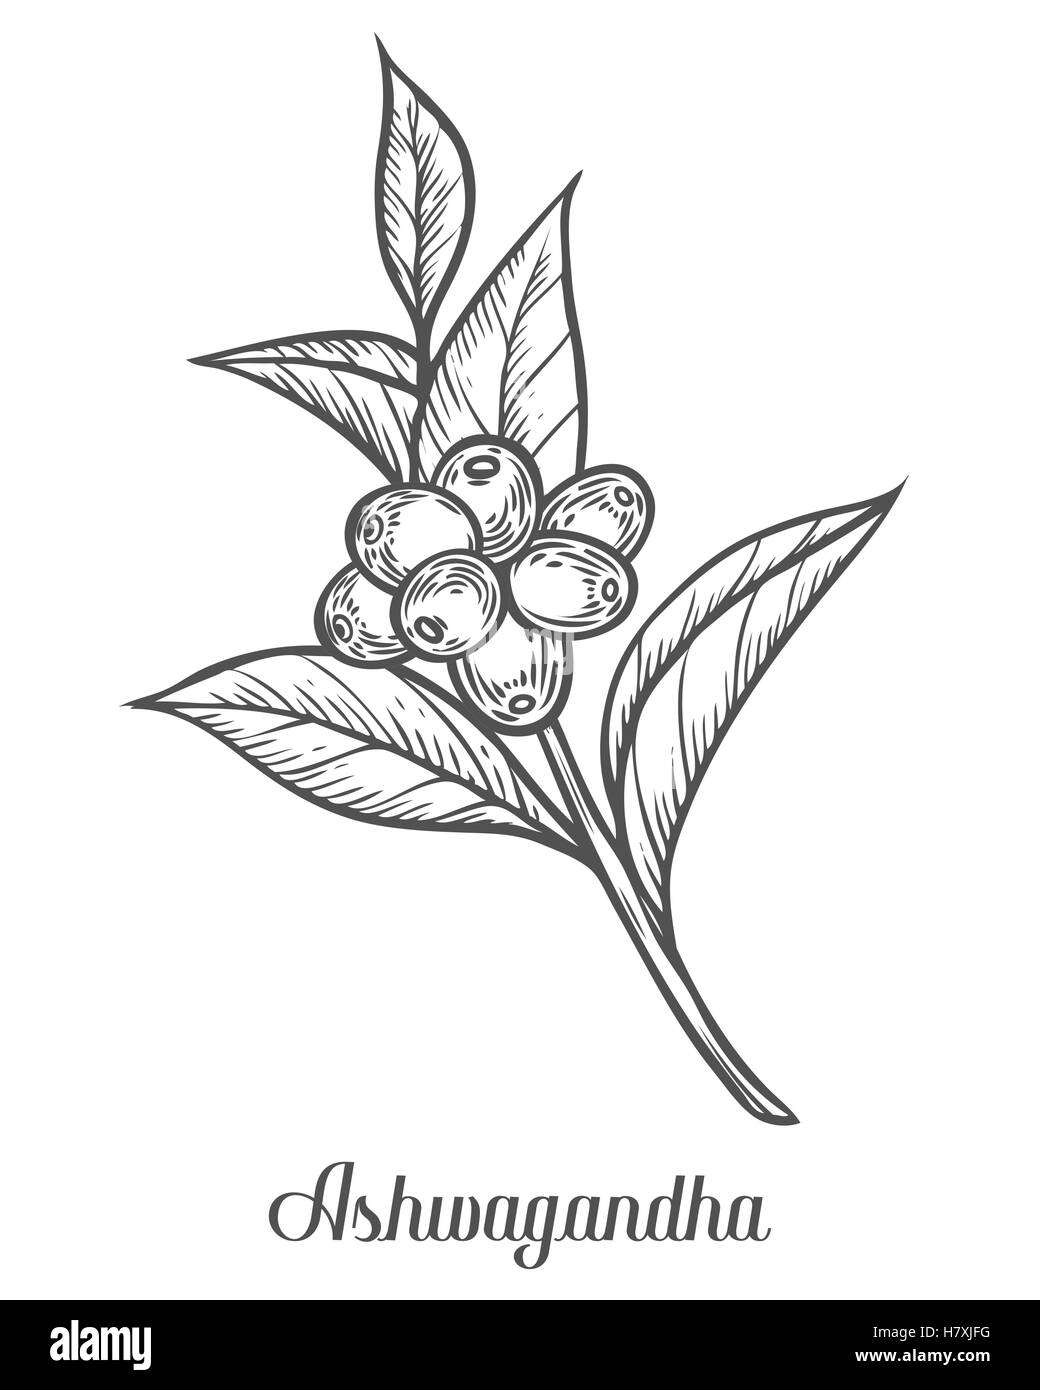 Ayurvedische Kräuter Withania Somnifera, Ashwagandha, indischer Ginseng, vergiften Stachelbeere oder Winterkirsche genannt. Gravieren von Hand gezeichnet Stock Vektor